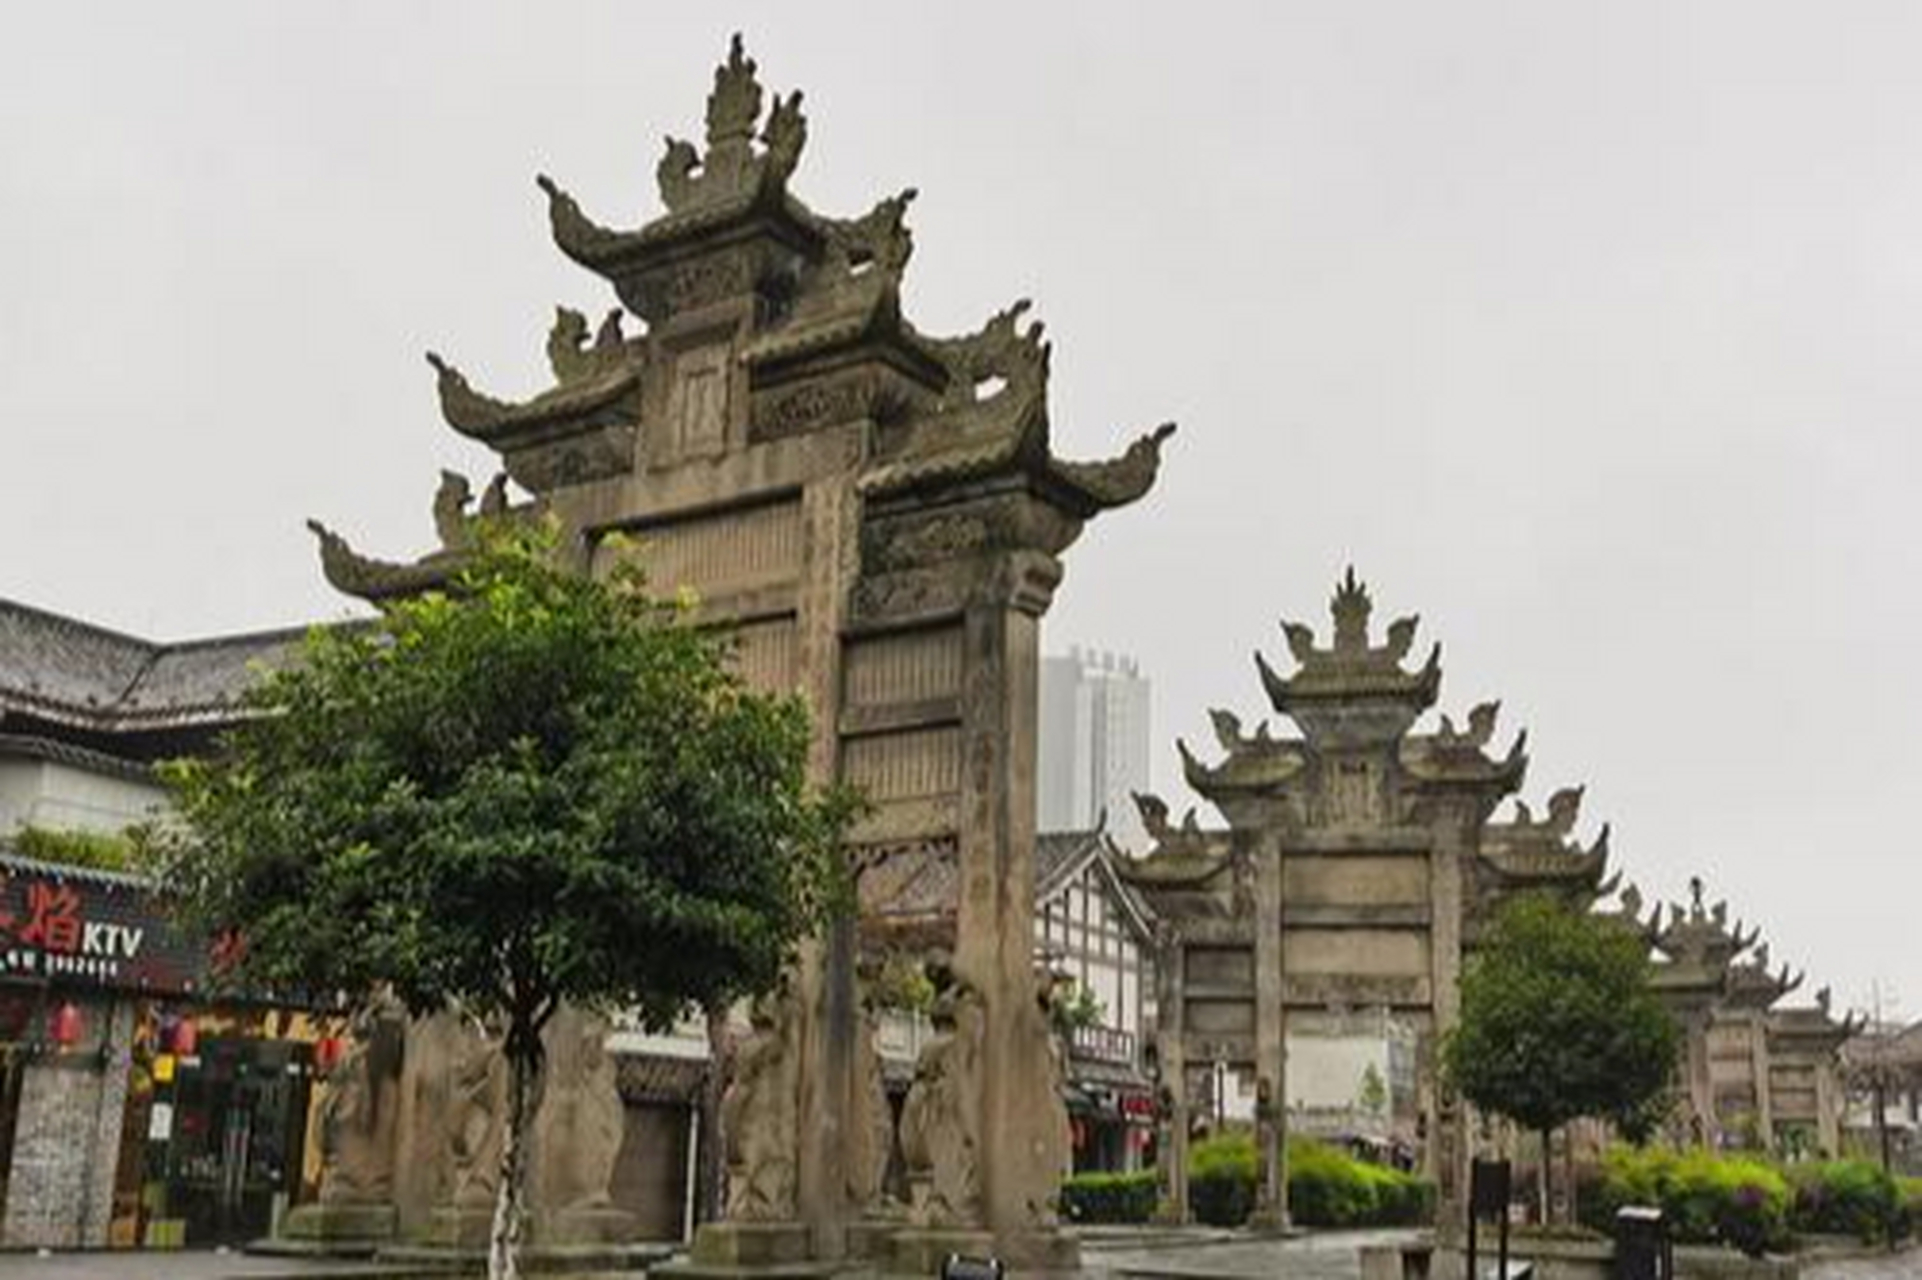 隆昌石牌坊,位于内江隆昌市,是国家4a级旅游景区,也是国家级非物质